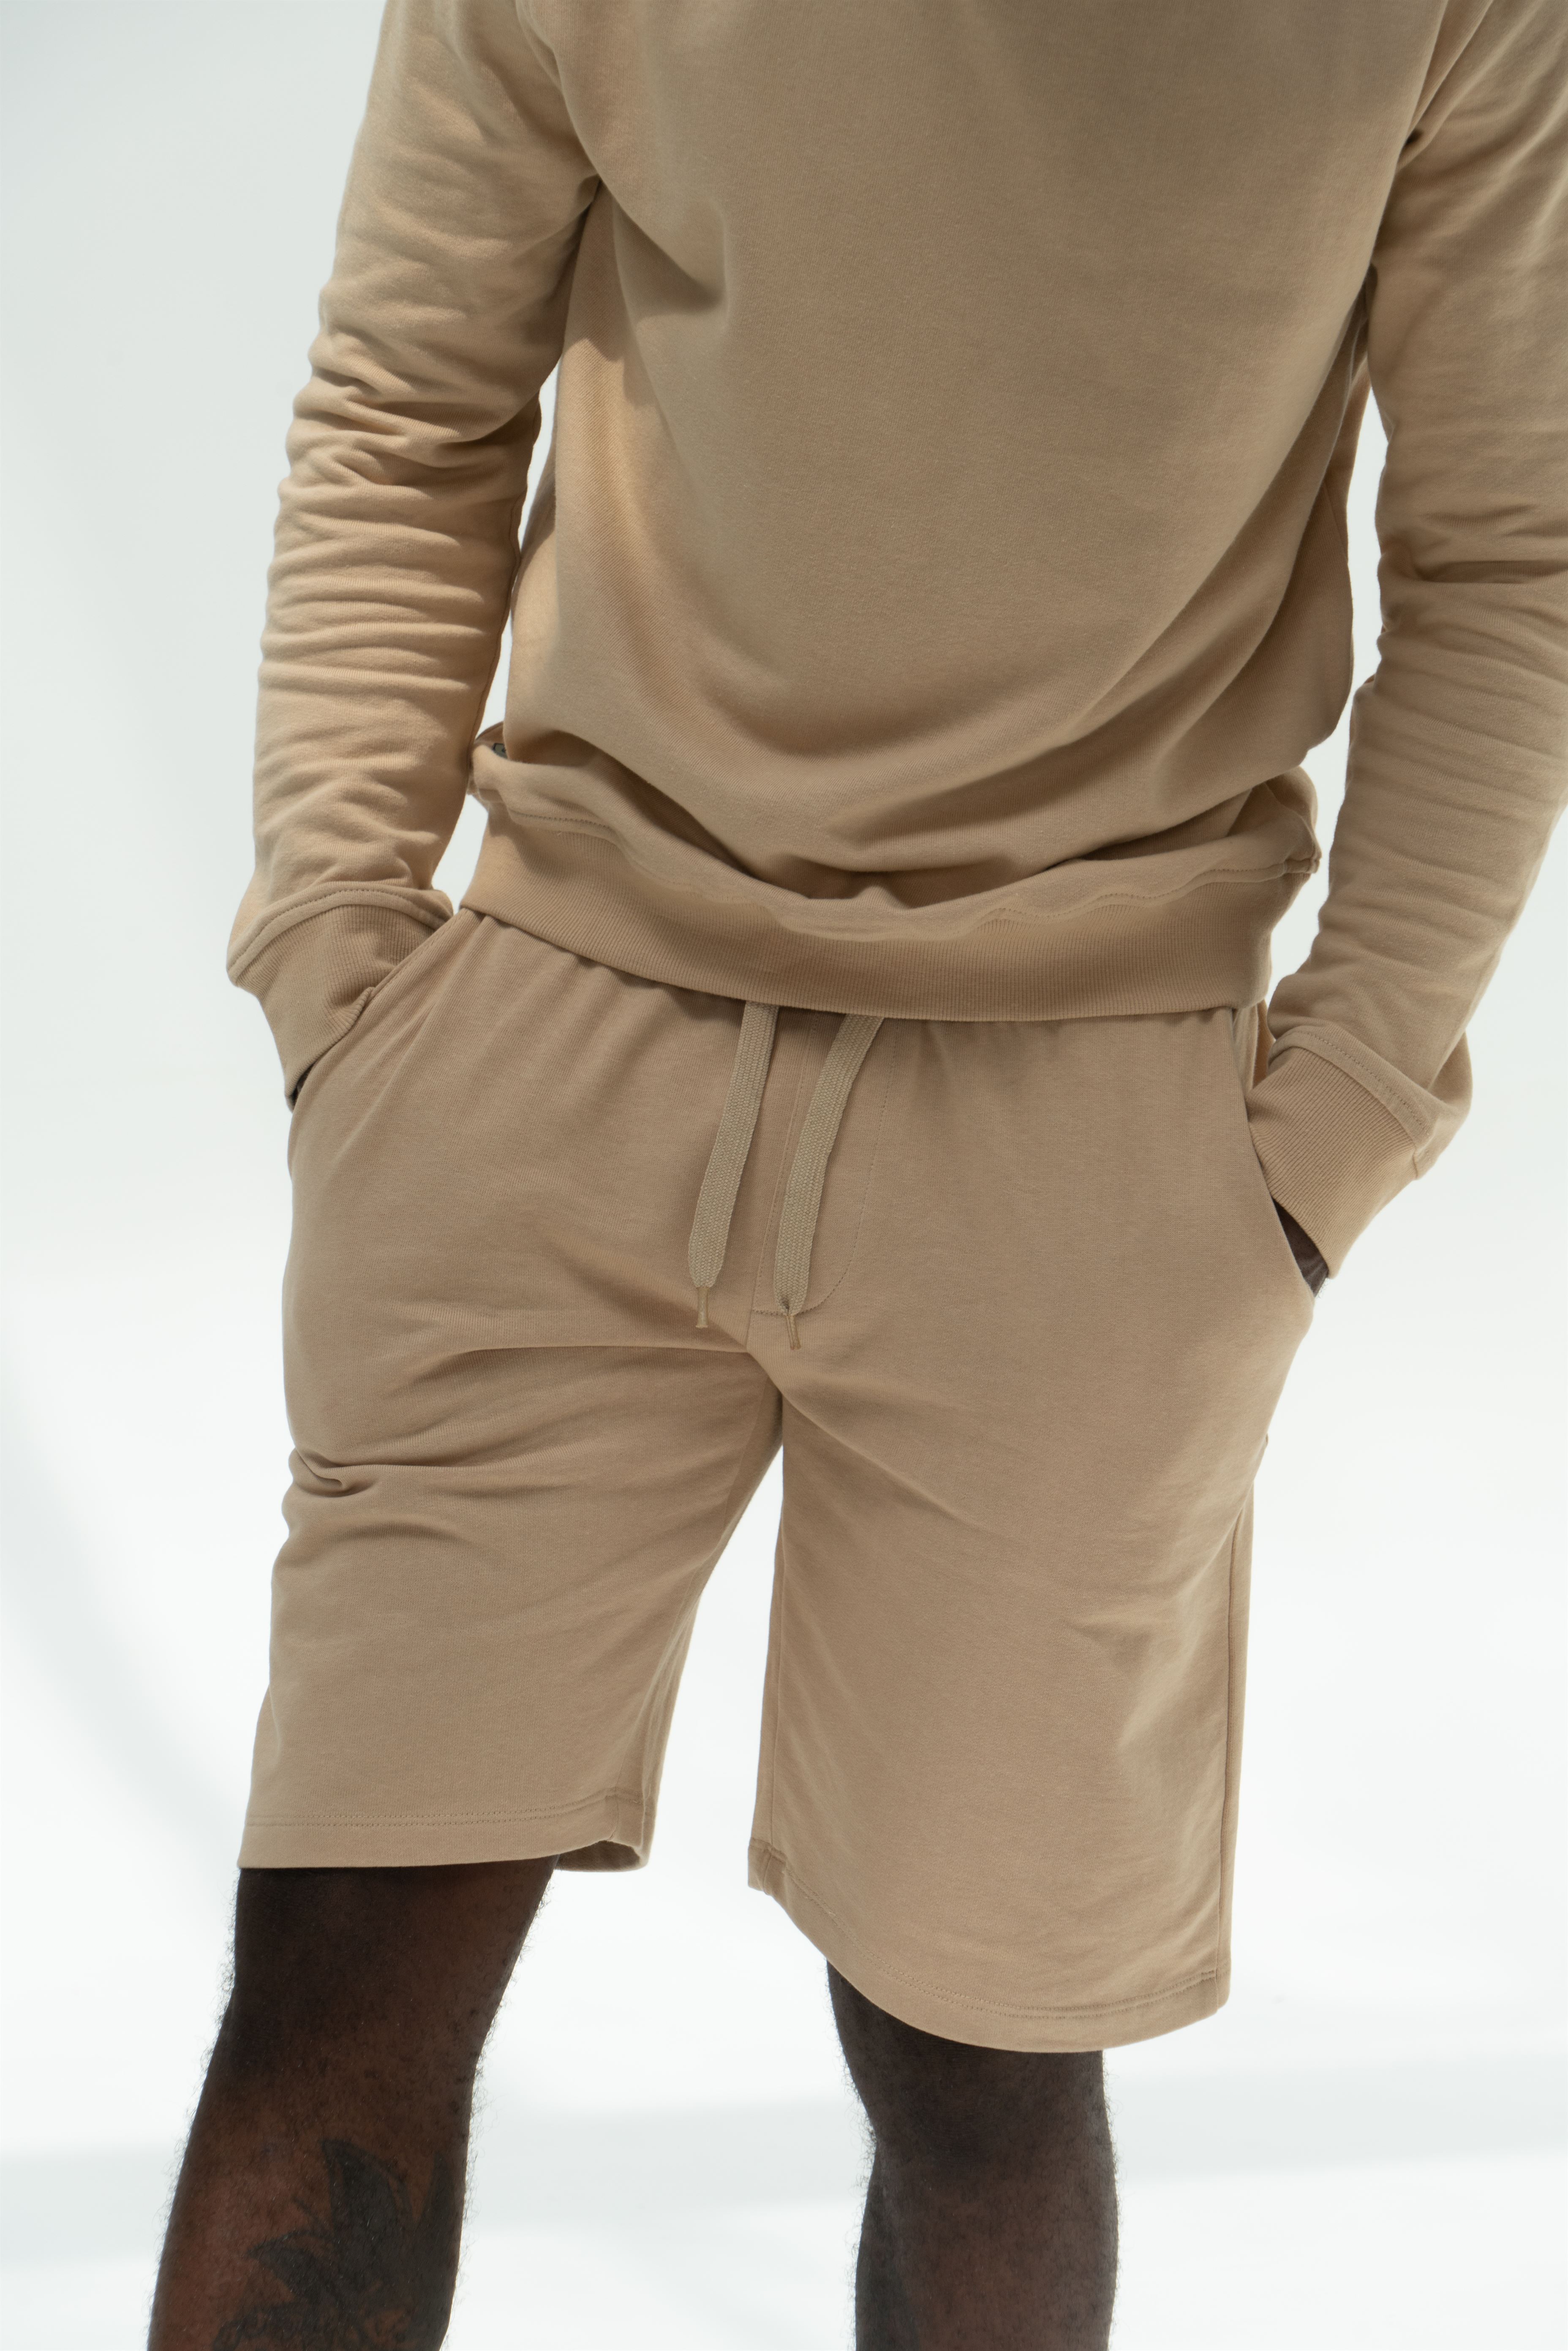 Sportswear Shorts Light Beige Casual Man